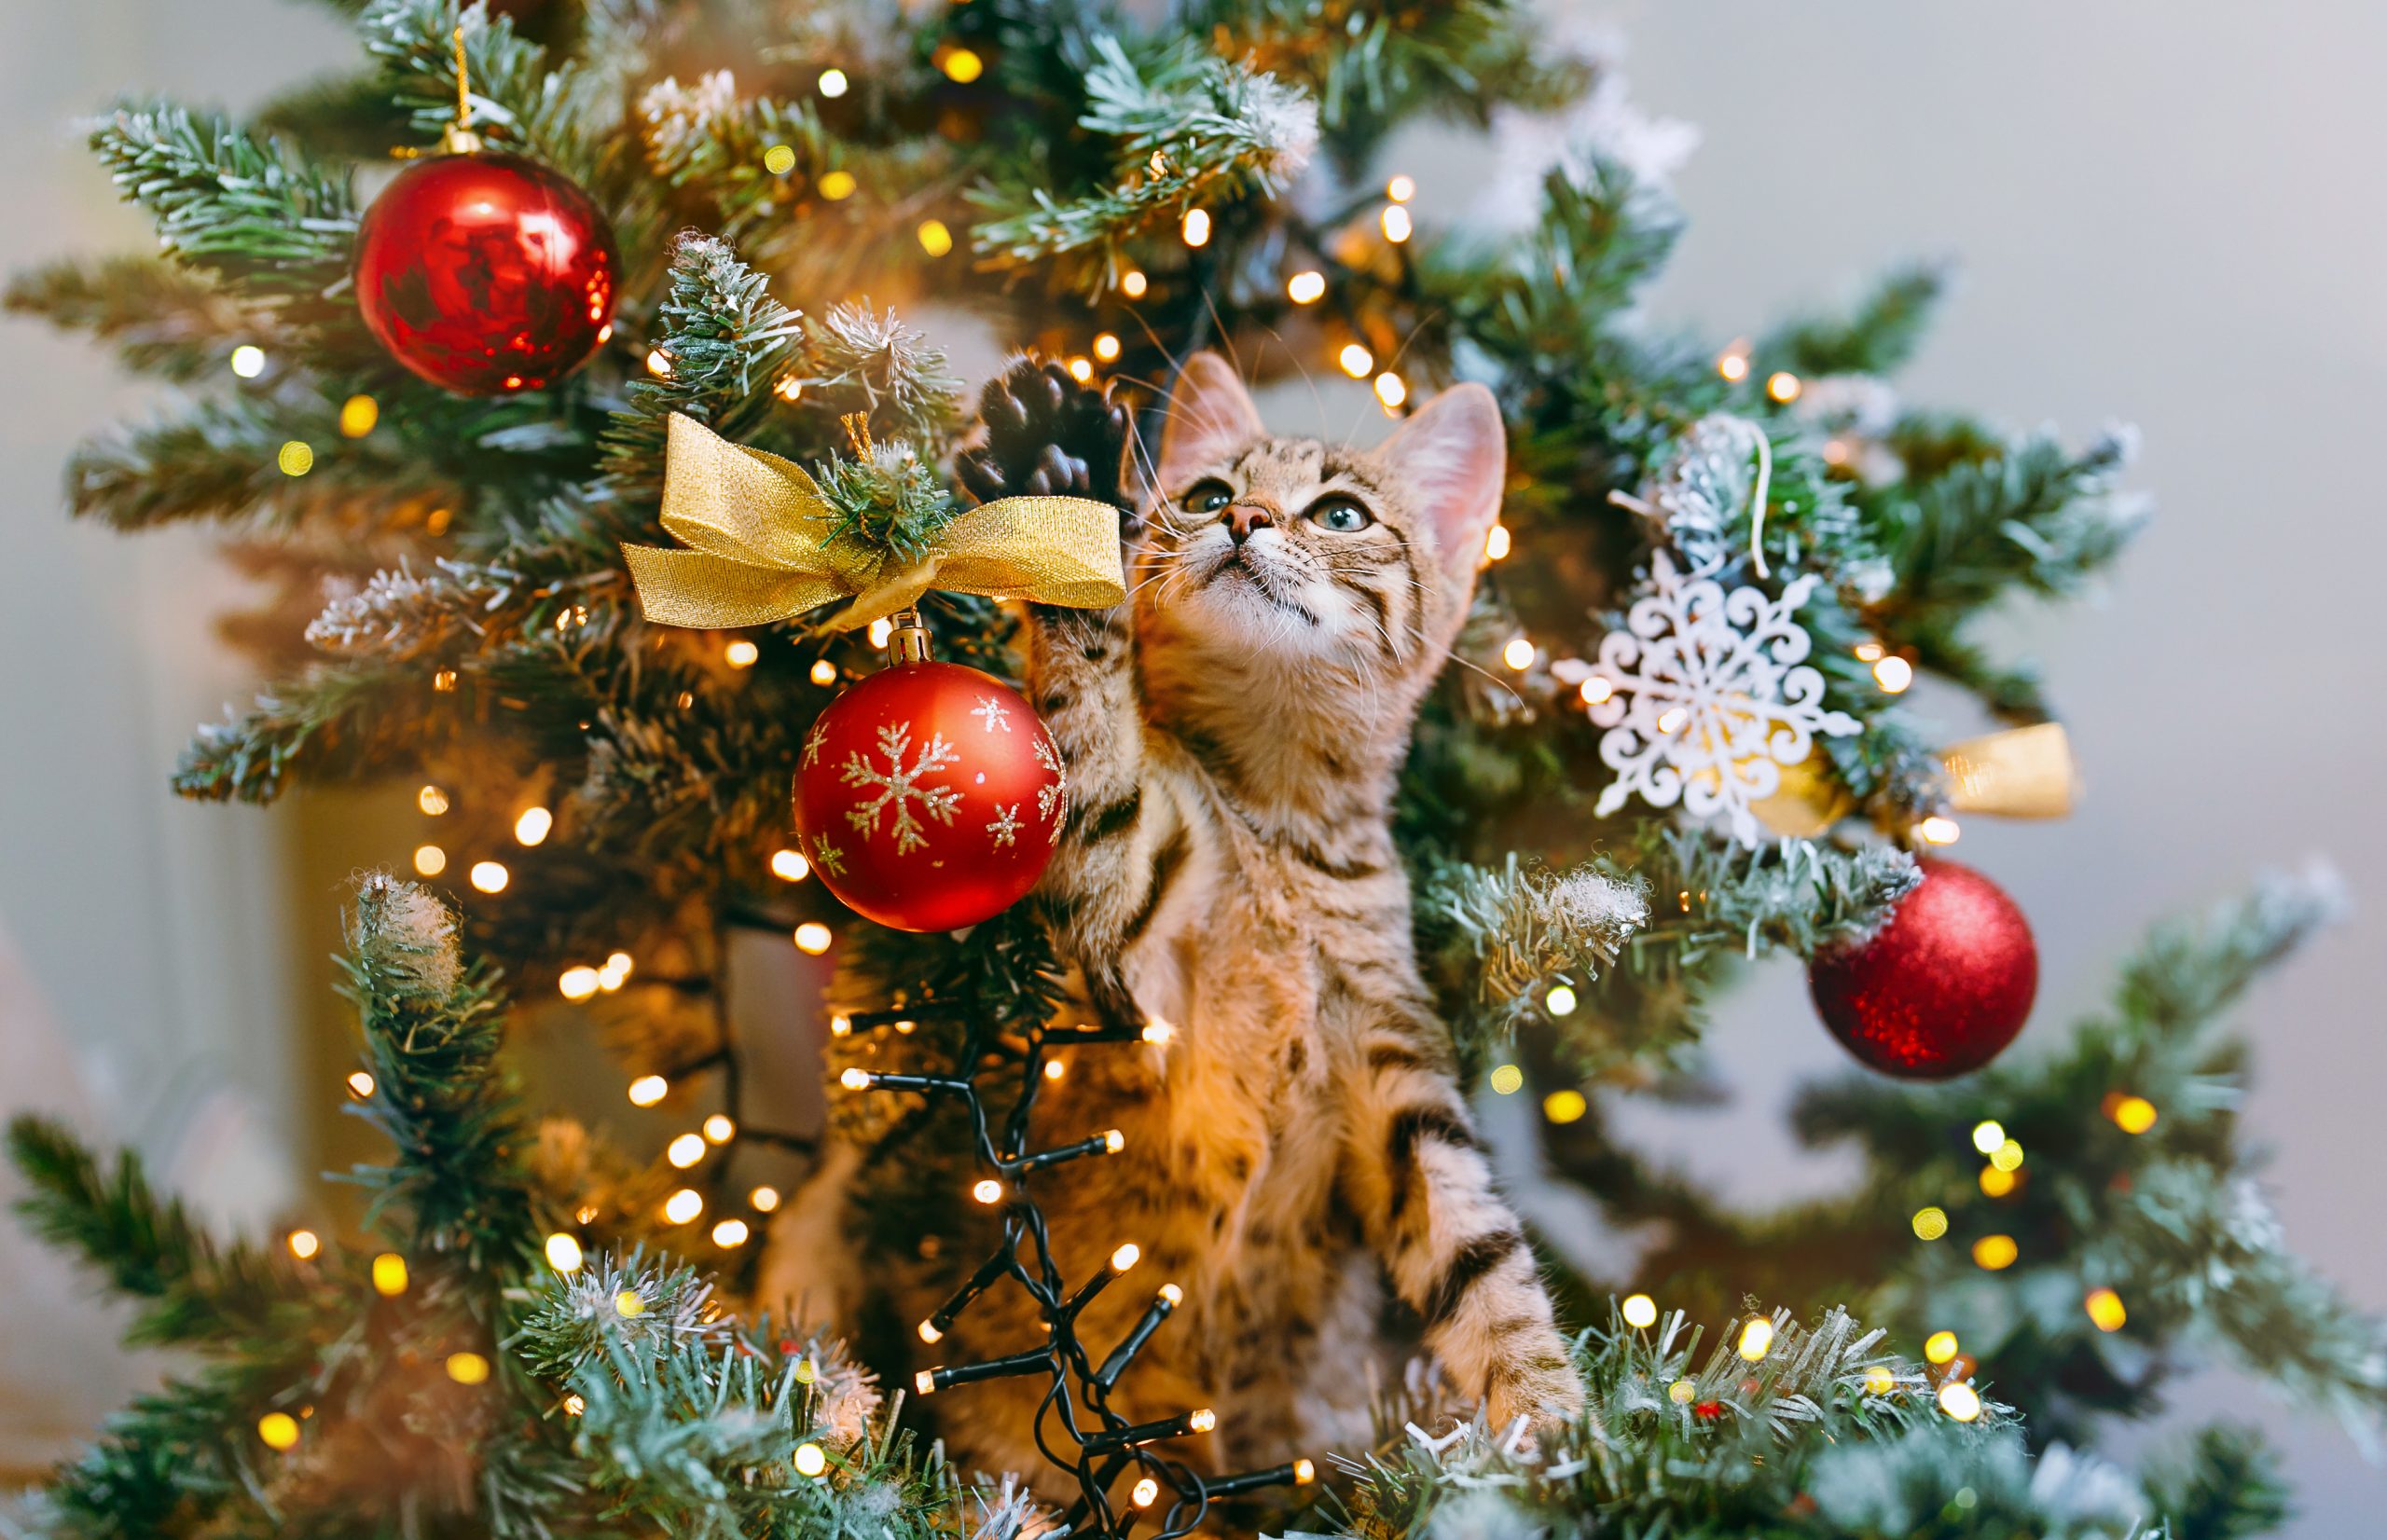 Πώς να προστατέψεις το χριστουγεννιάτικο δέντρο από τη γάτα σου;